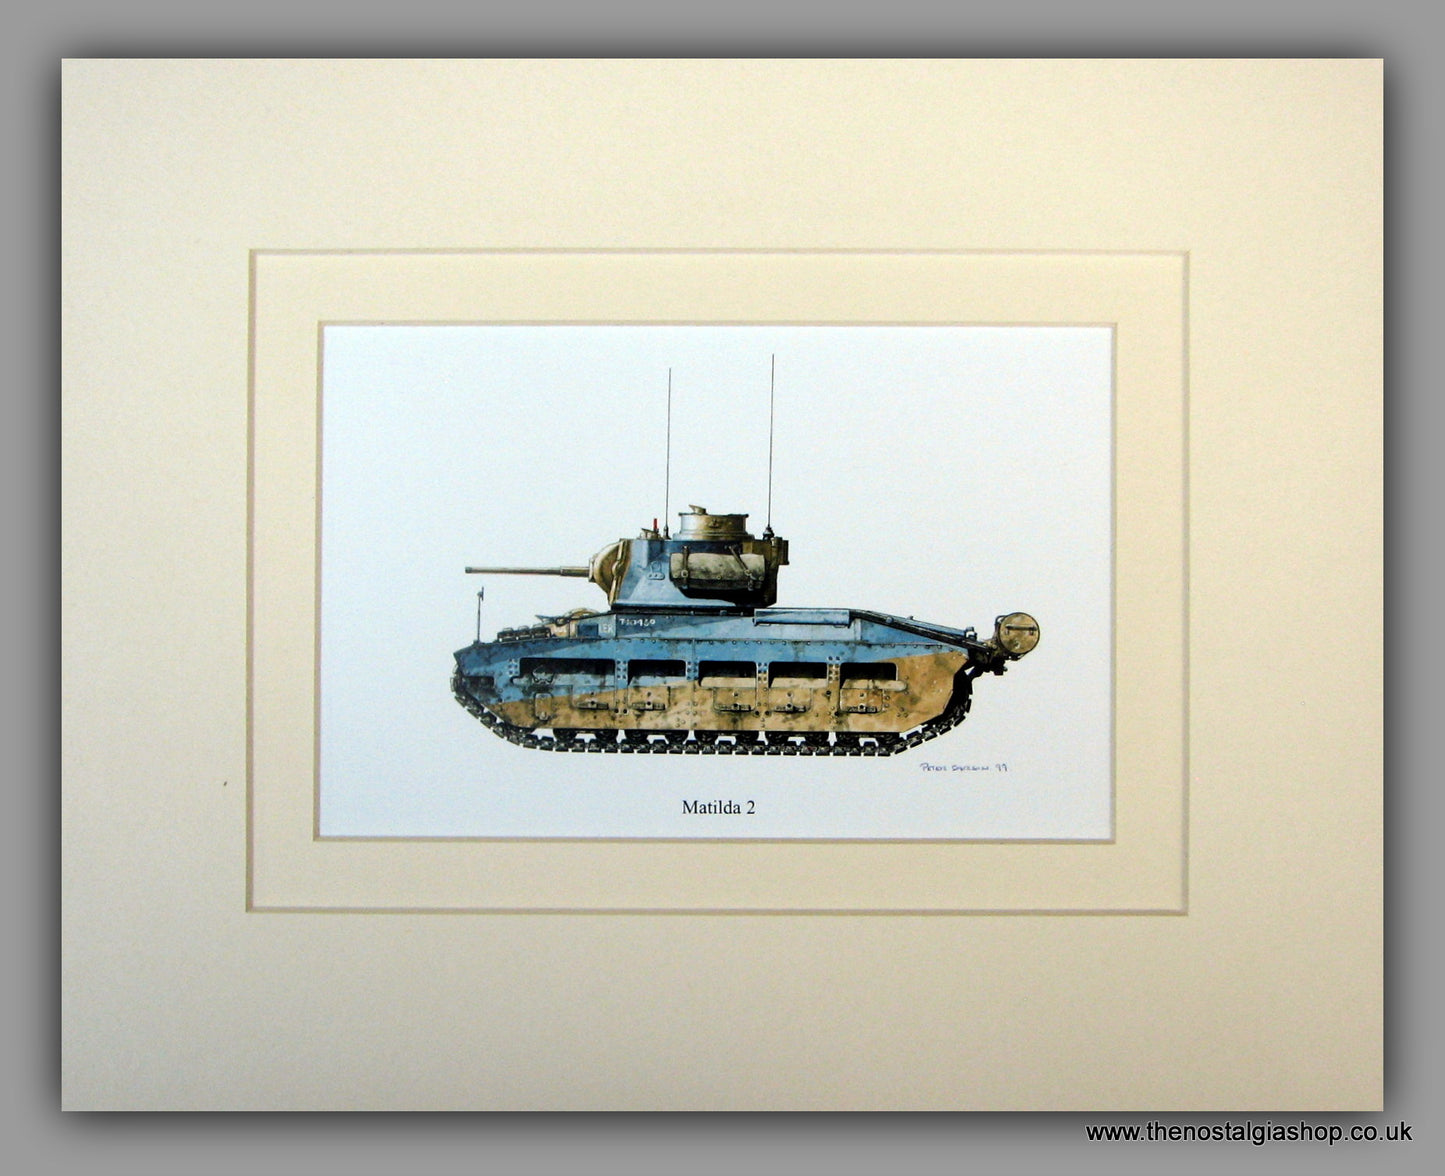 Matilda 2. British Tank. Mounted Print